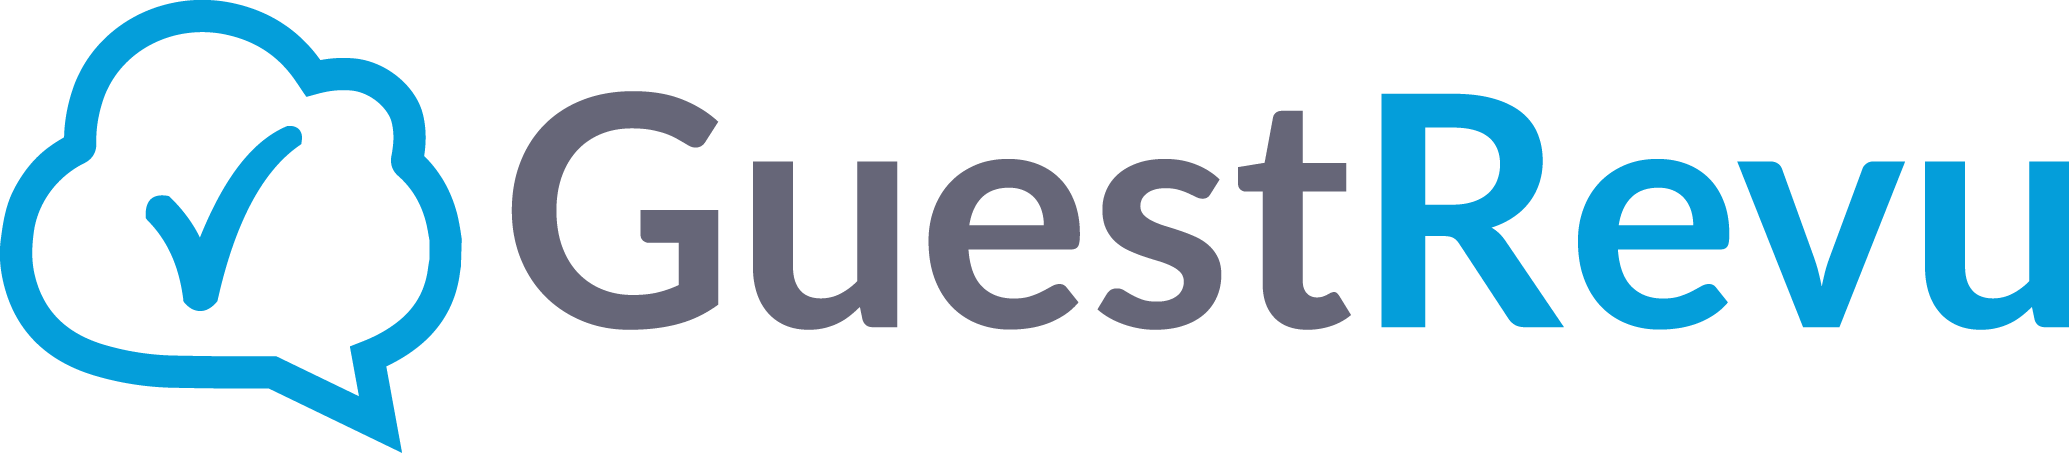 GuestRevu-Logo